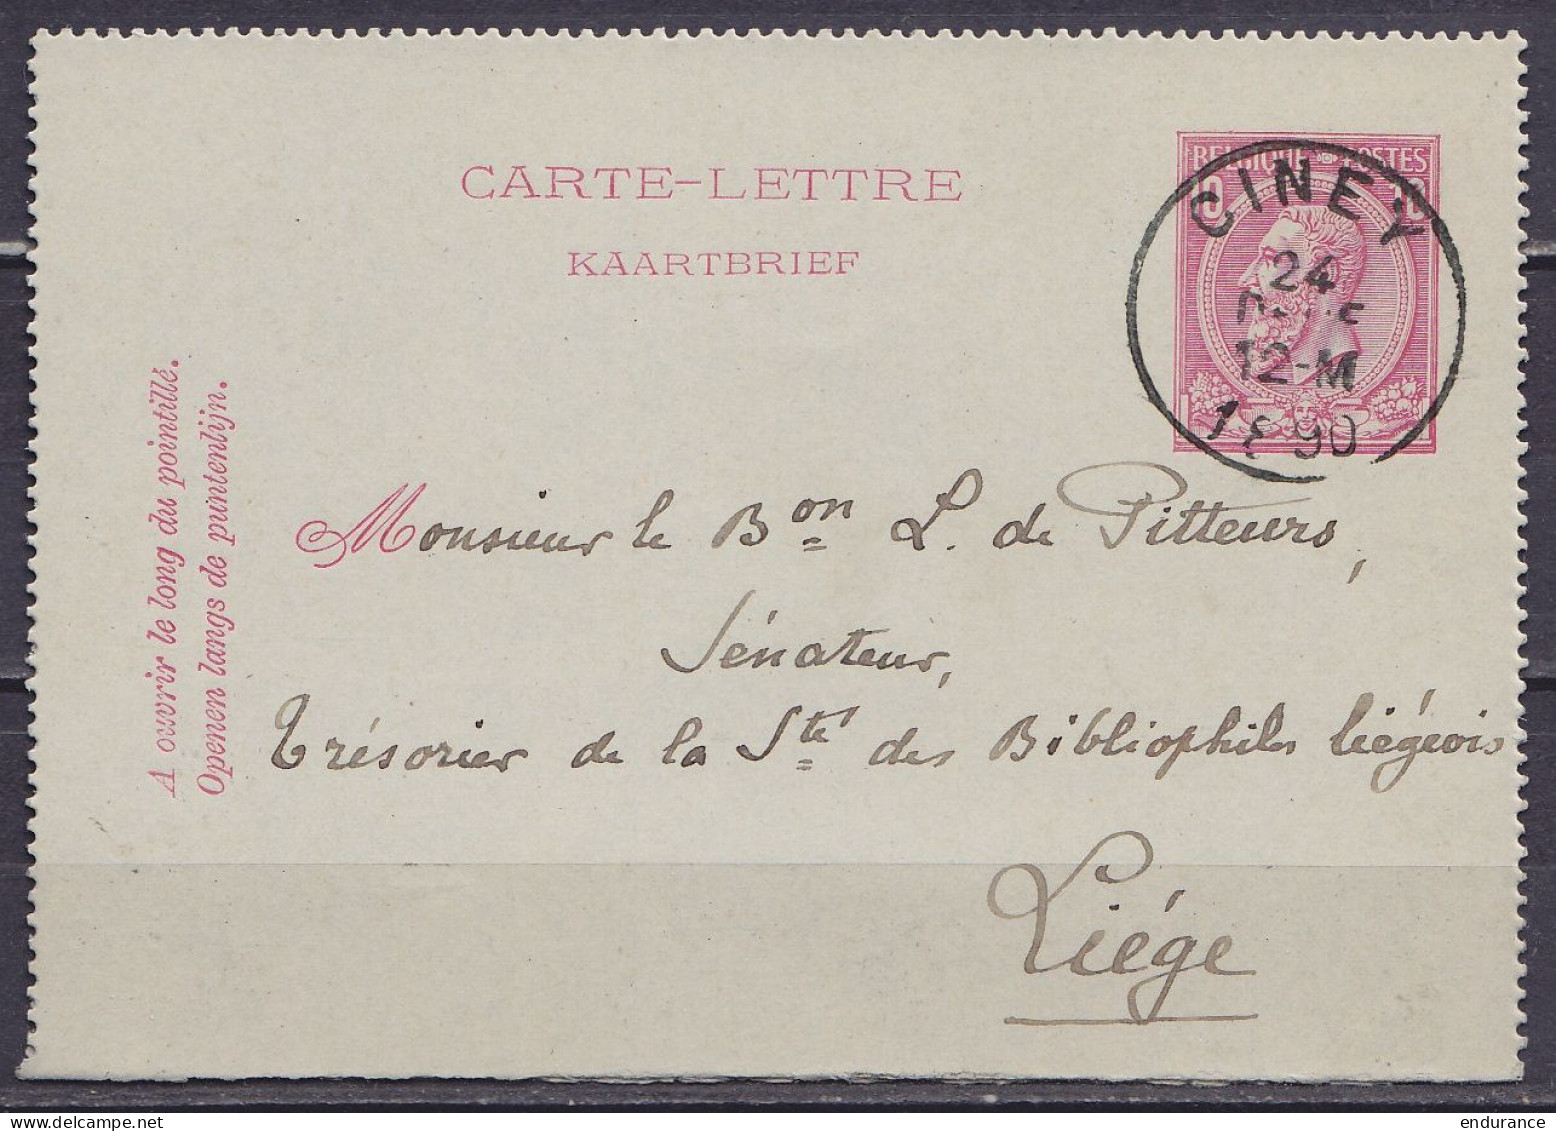 EP Carte-lettre 10c Rose (N°46) Càd CINEY /24 DECE 1890 De Halloy Pour LIEGE (au Dos: Càd LIEGE) - Cartes-lettres